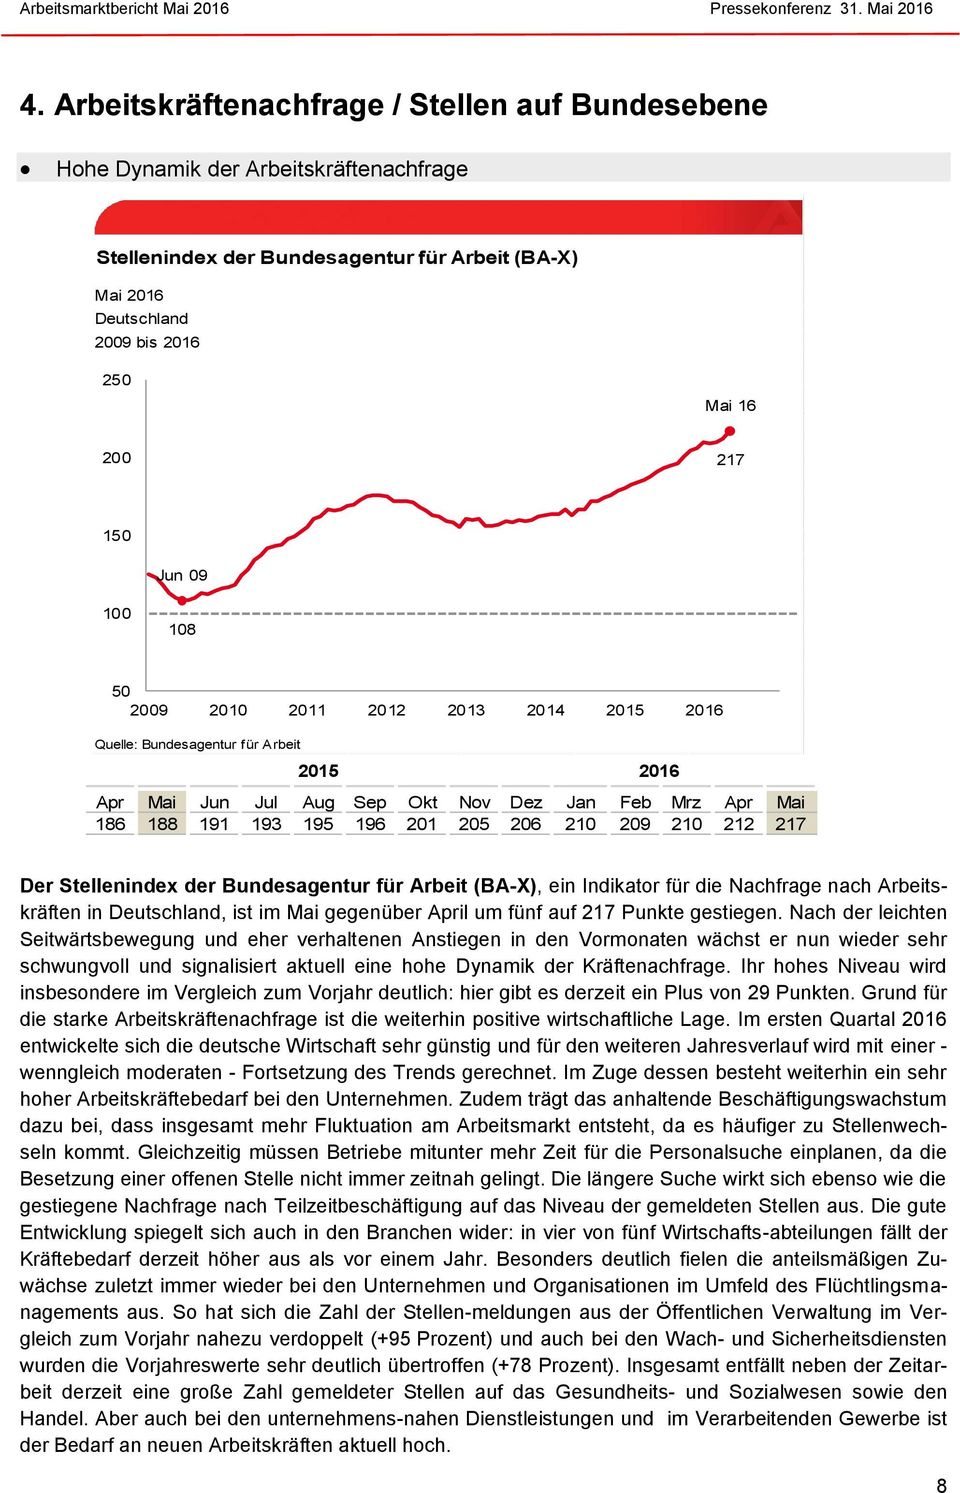 209 210 212 217 Der Stellenindex der Bundesagentur für Arbeit (BA-X), ein Indikator für die Nachfrage nach Arbeitskräften in Deutschland, ist im Mai gegenüber April um fünf auf 217 Punkte gestiegen.